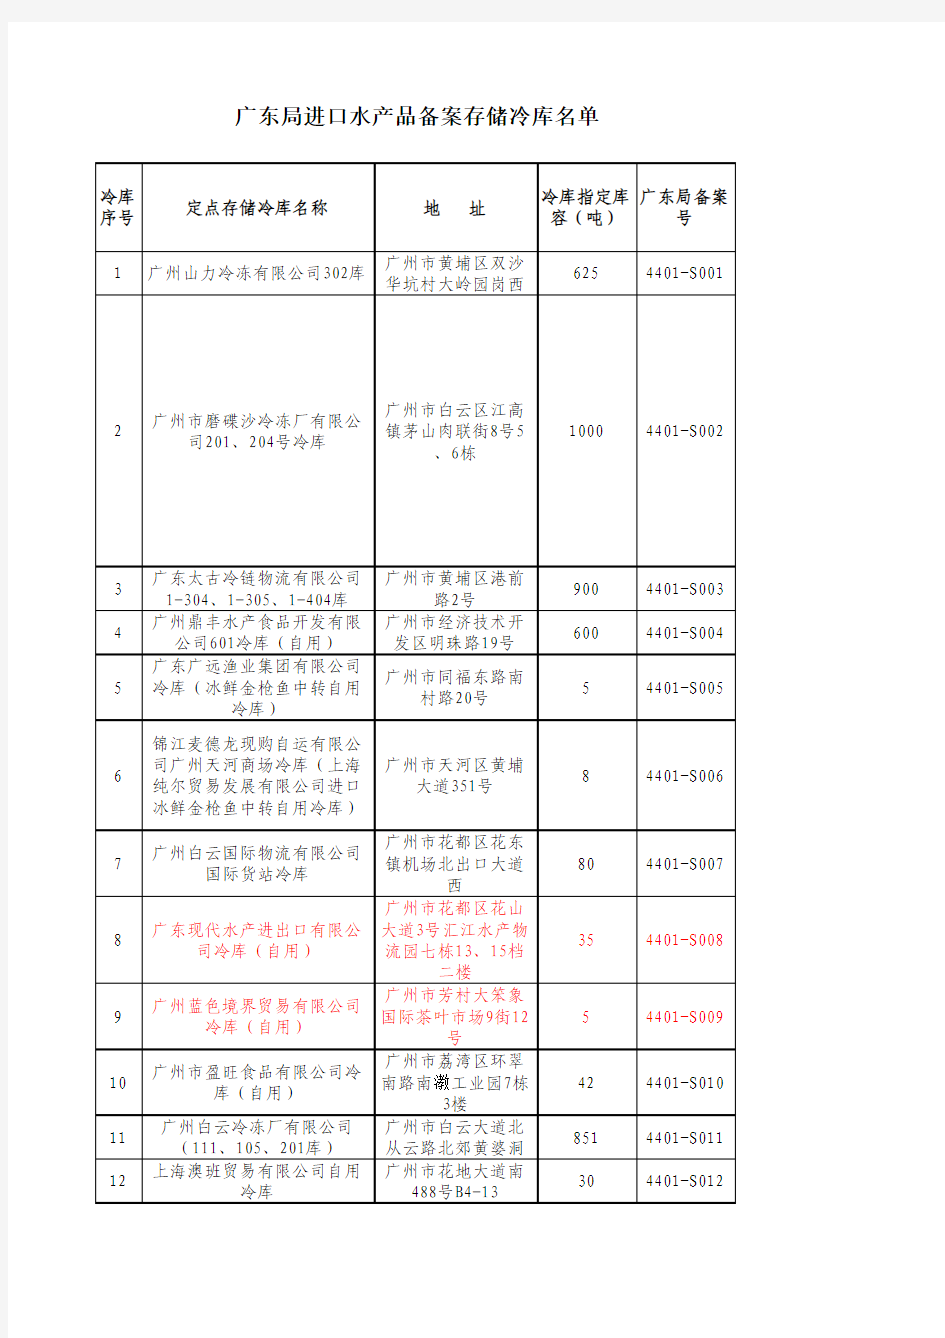 《广东局辖区进境水产品认可口岸和配套存储库名单》(参考材料五)_2